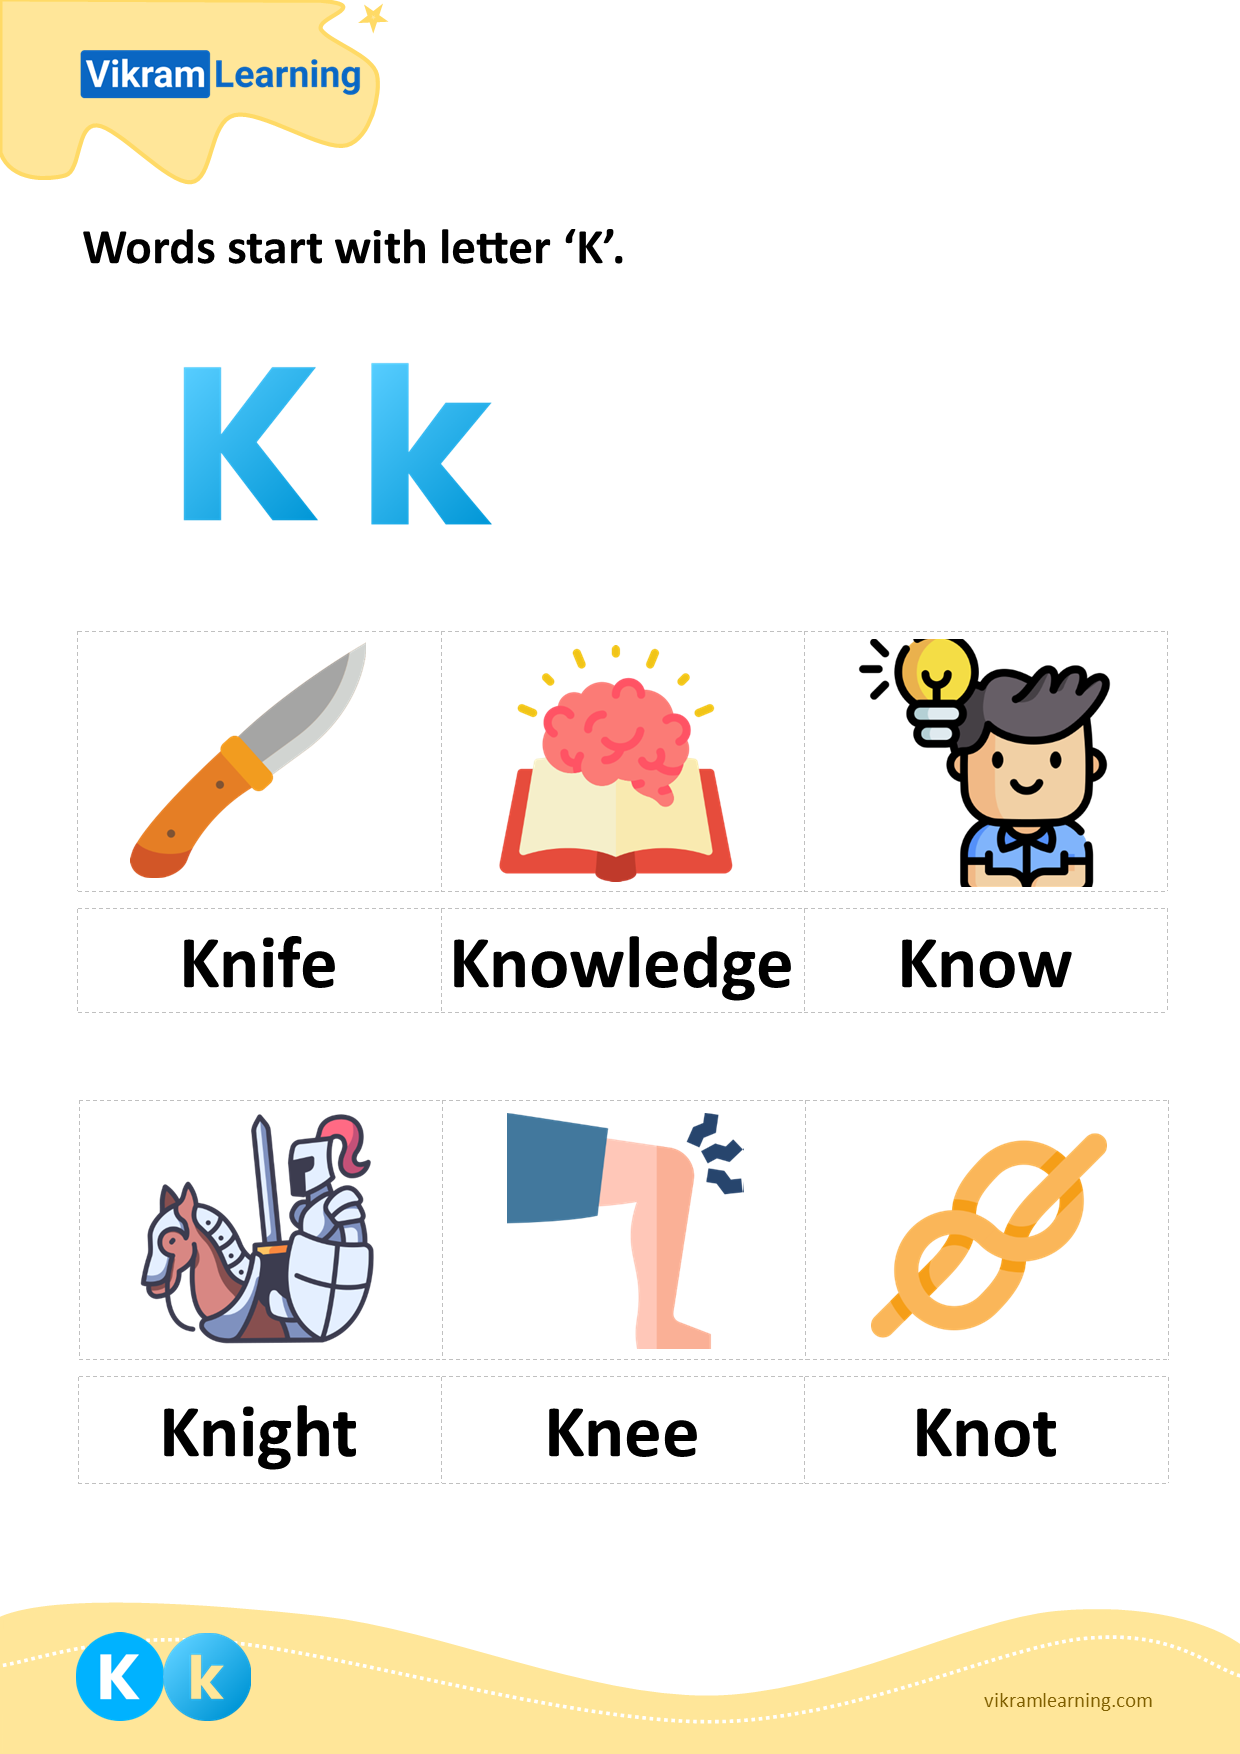 Download words start with letter 'k' worksheets | vikramlearning.com